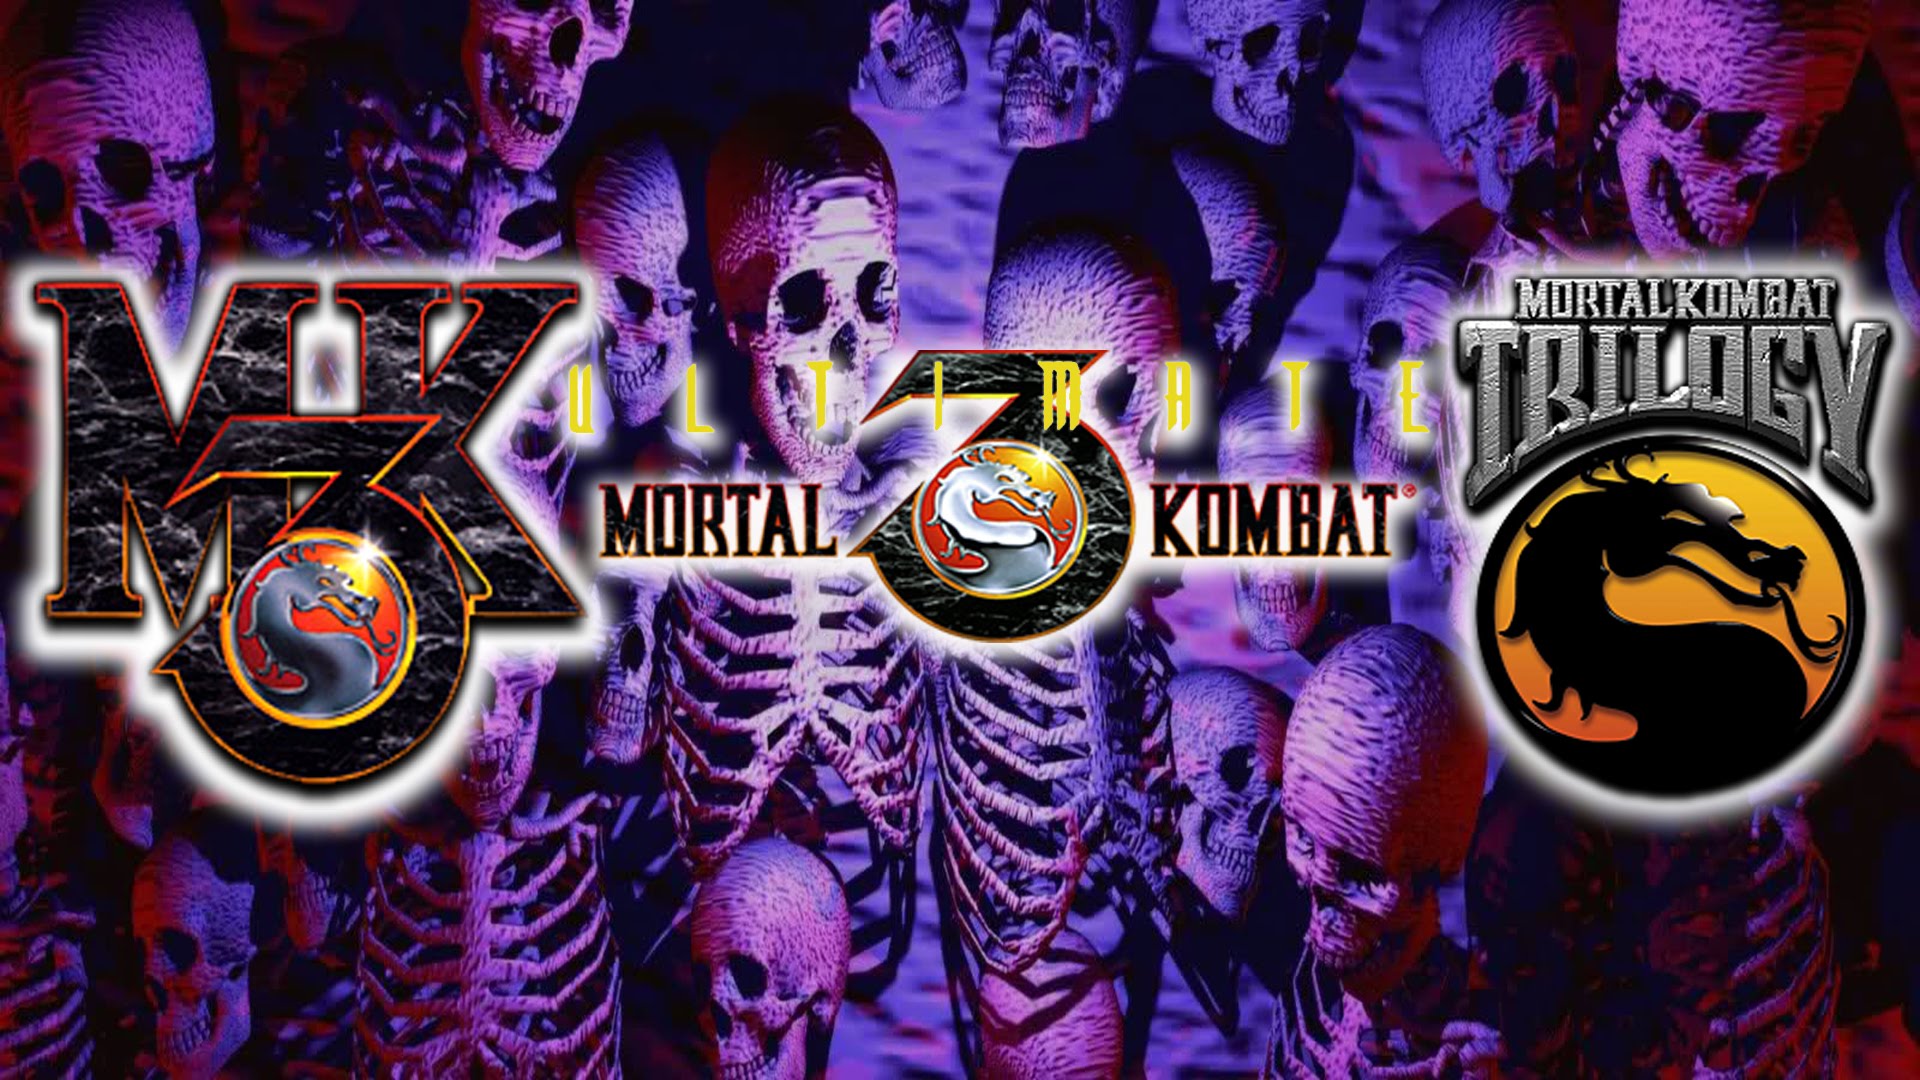 Мортал комбат 3 ultimate. Mk3 Ultimate. MK 3/Ultimate/Trilogy. Mortal Kombat Ultimate. Мортал комбат 3 ультимейт.